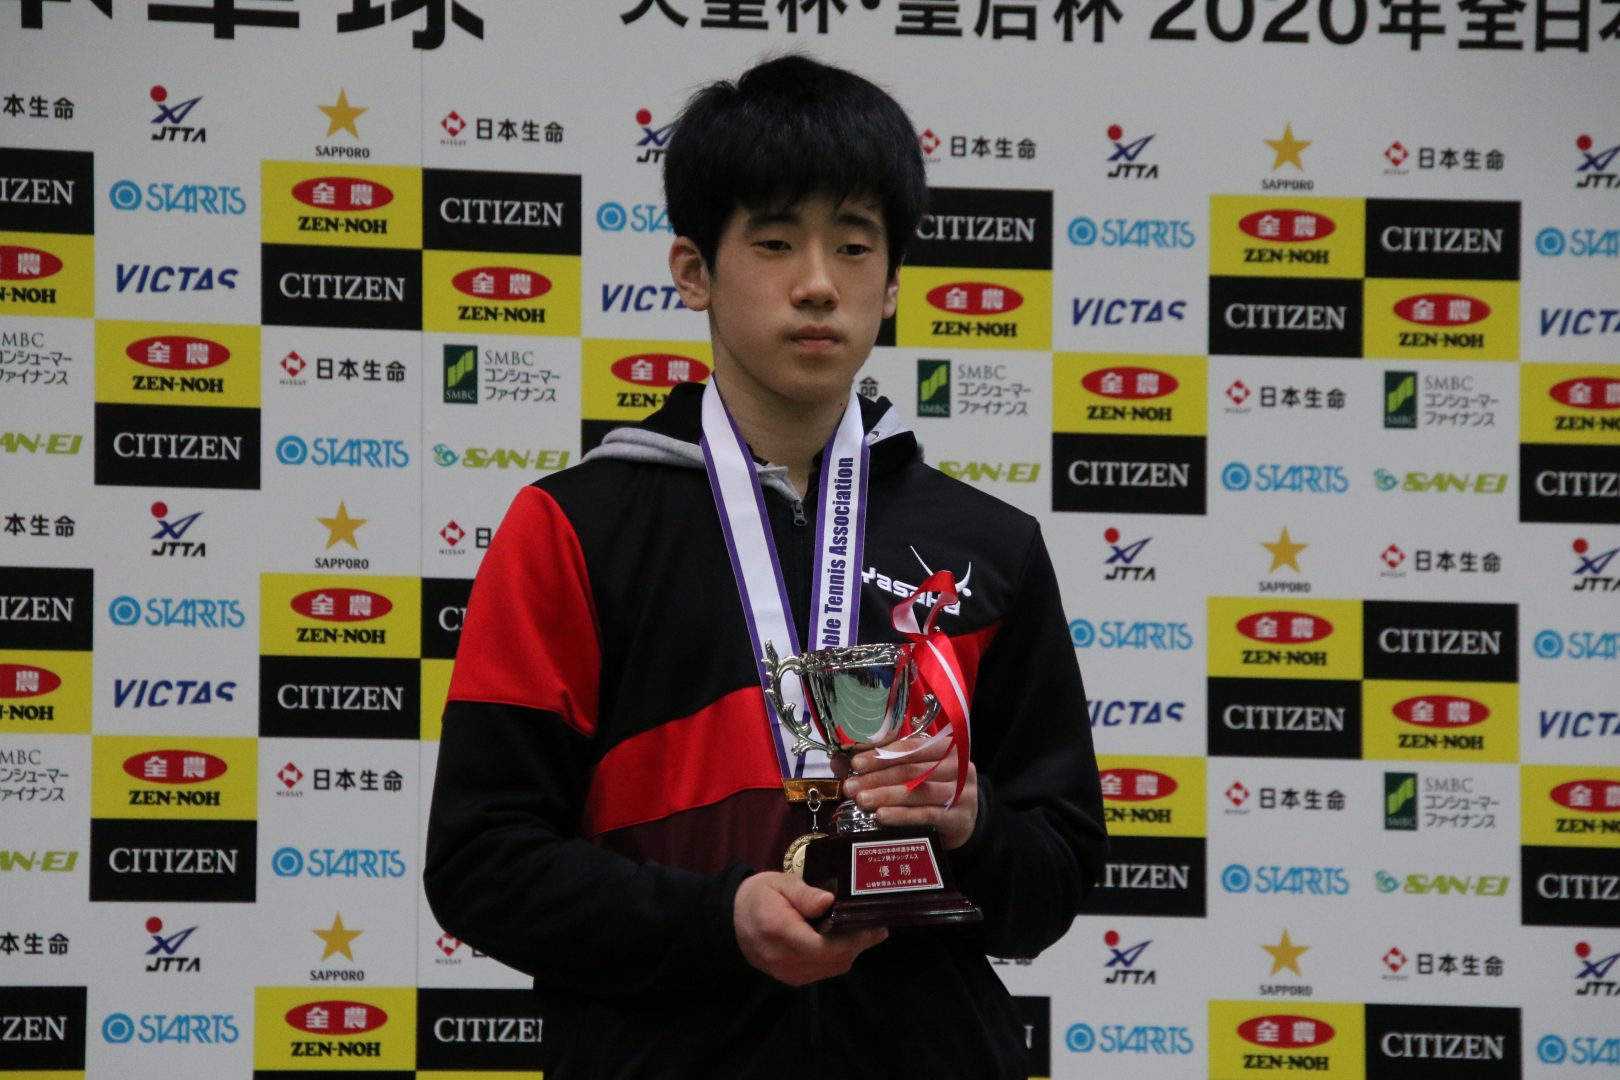 男子・吉山、女子・大藤が令和初のジュニアチャンピオンに輝く＜全日本卓球2020＞